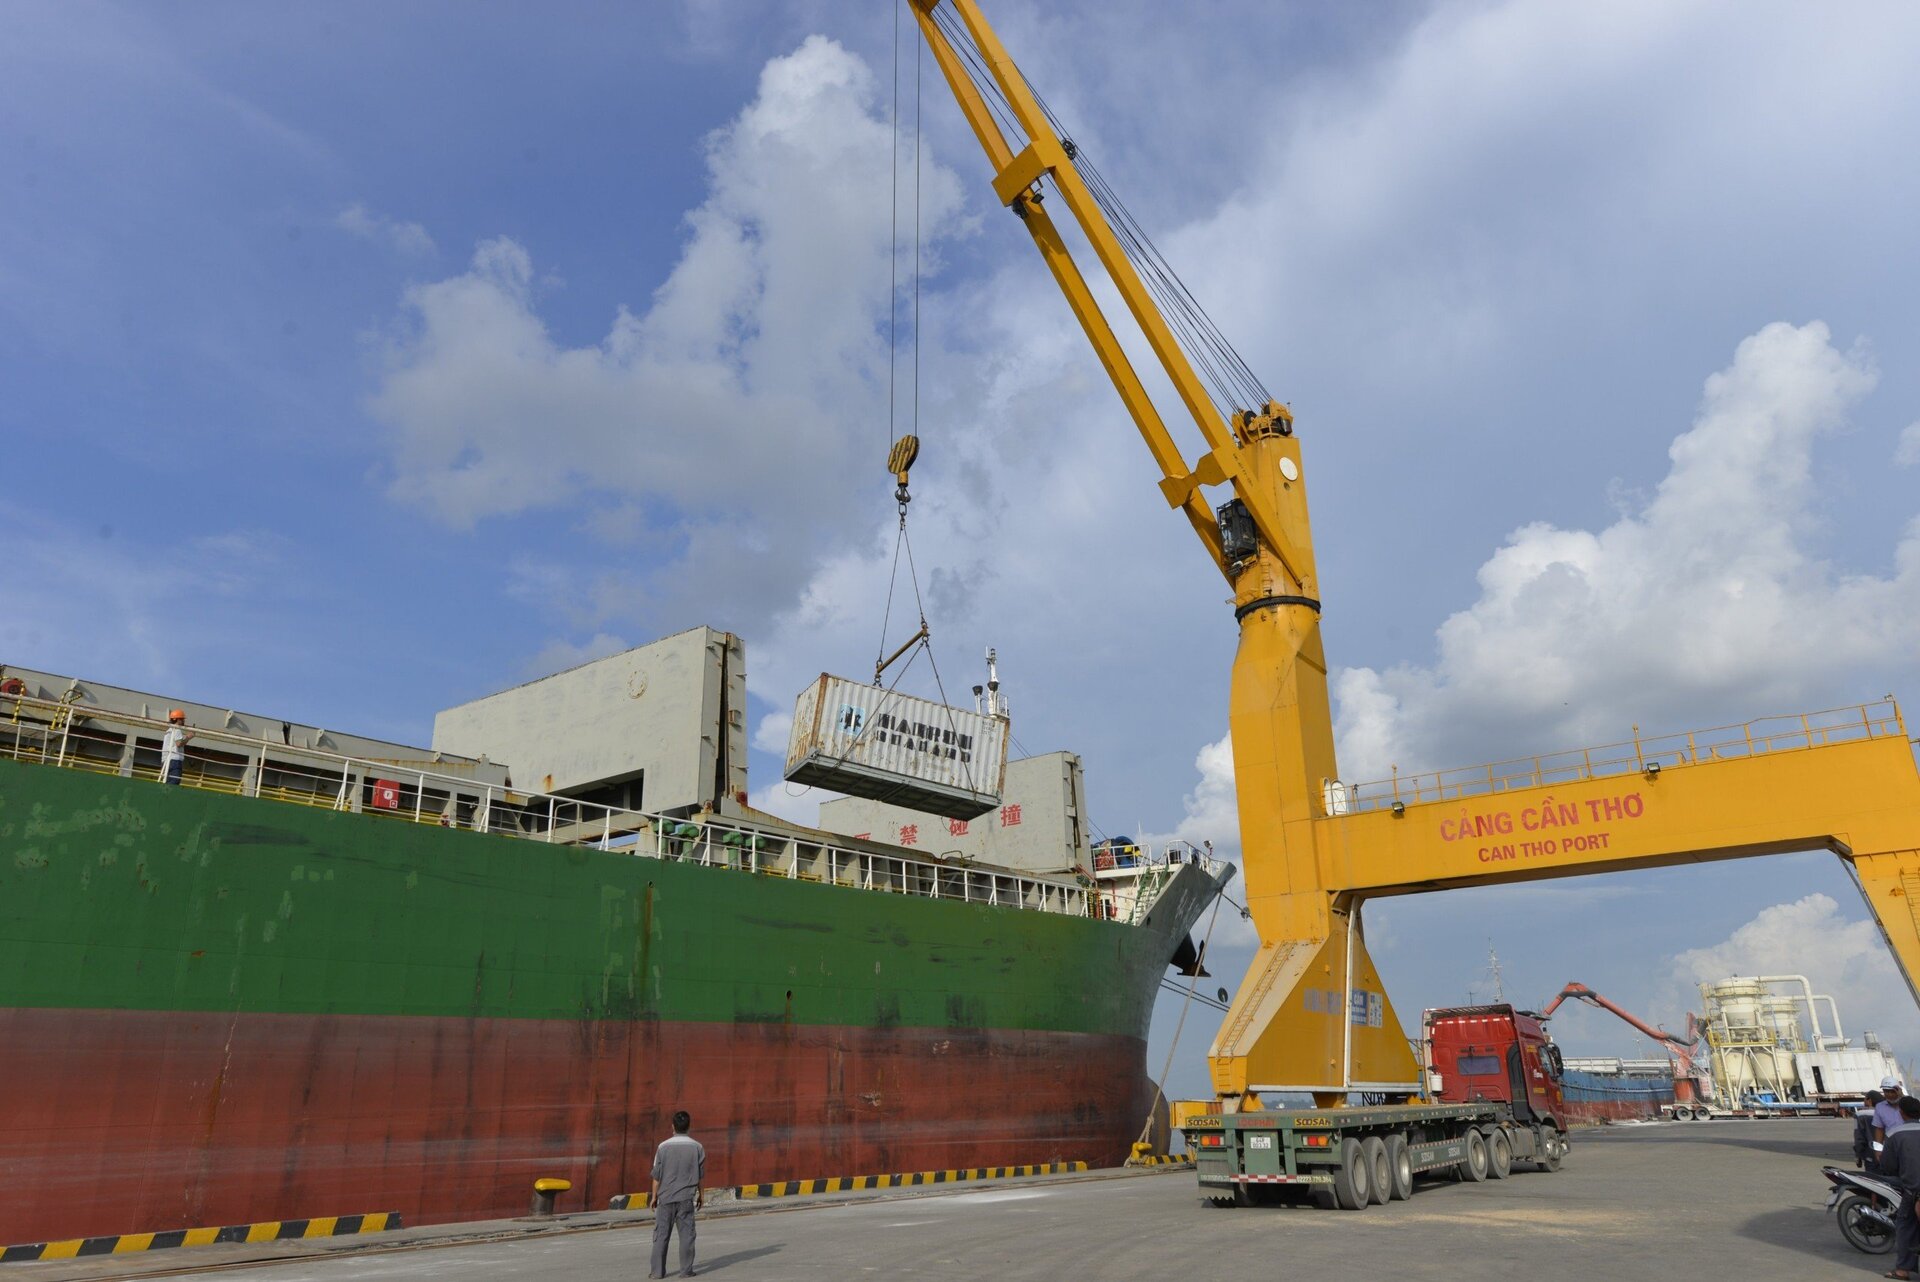 Cụm cảng Cần Thơ hiện nay chỉ mới đón được tàu từ 3.000 - 5.000 tấn, đây là một hạn chế.